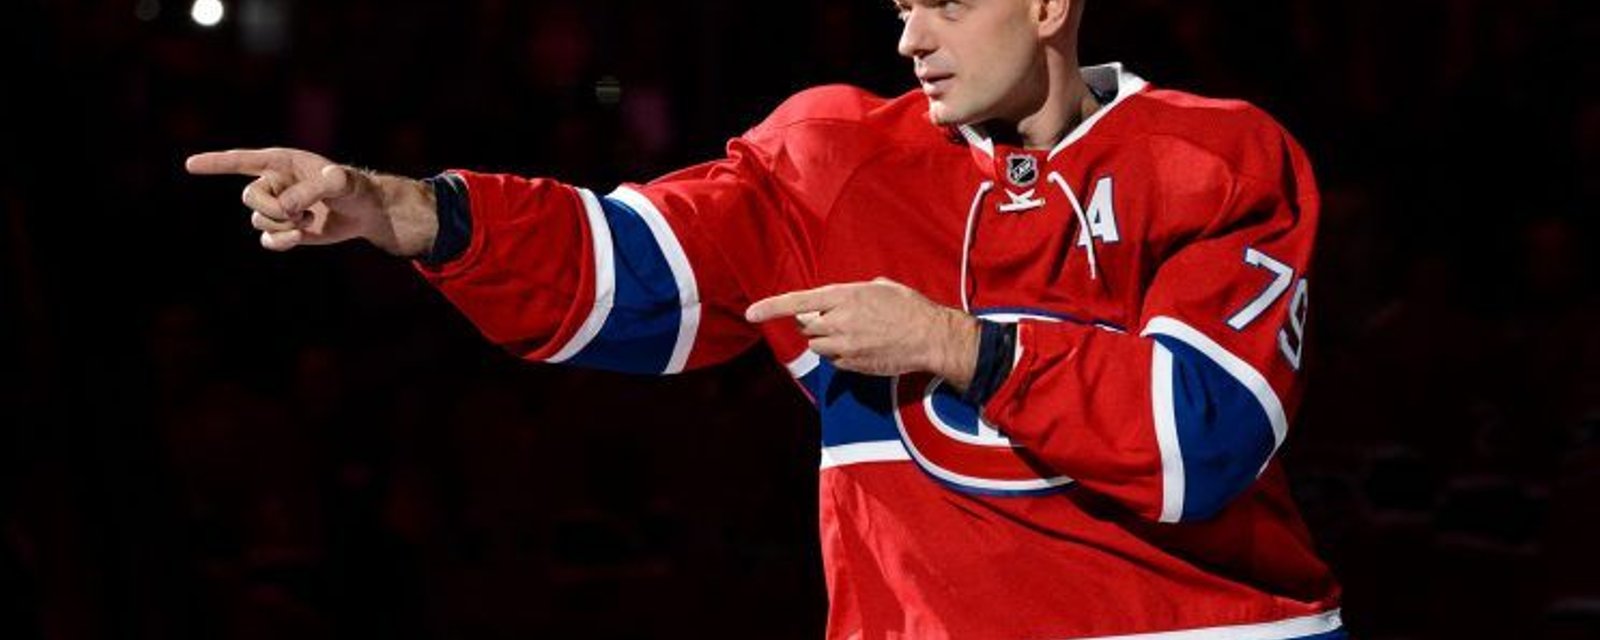 Andrei Markov préparerait-il secrètement son retour à Montréal?